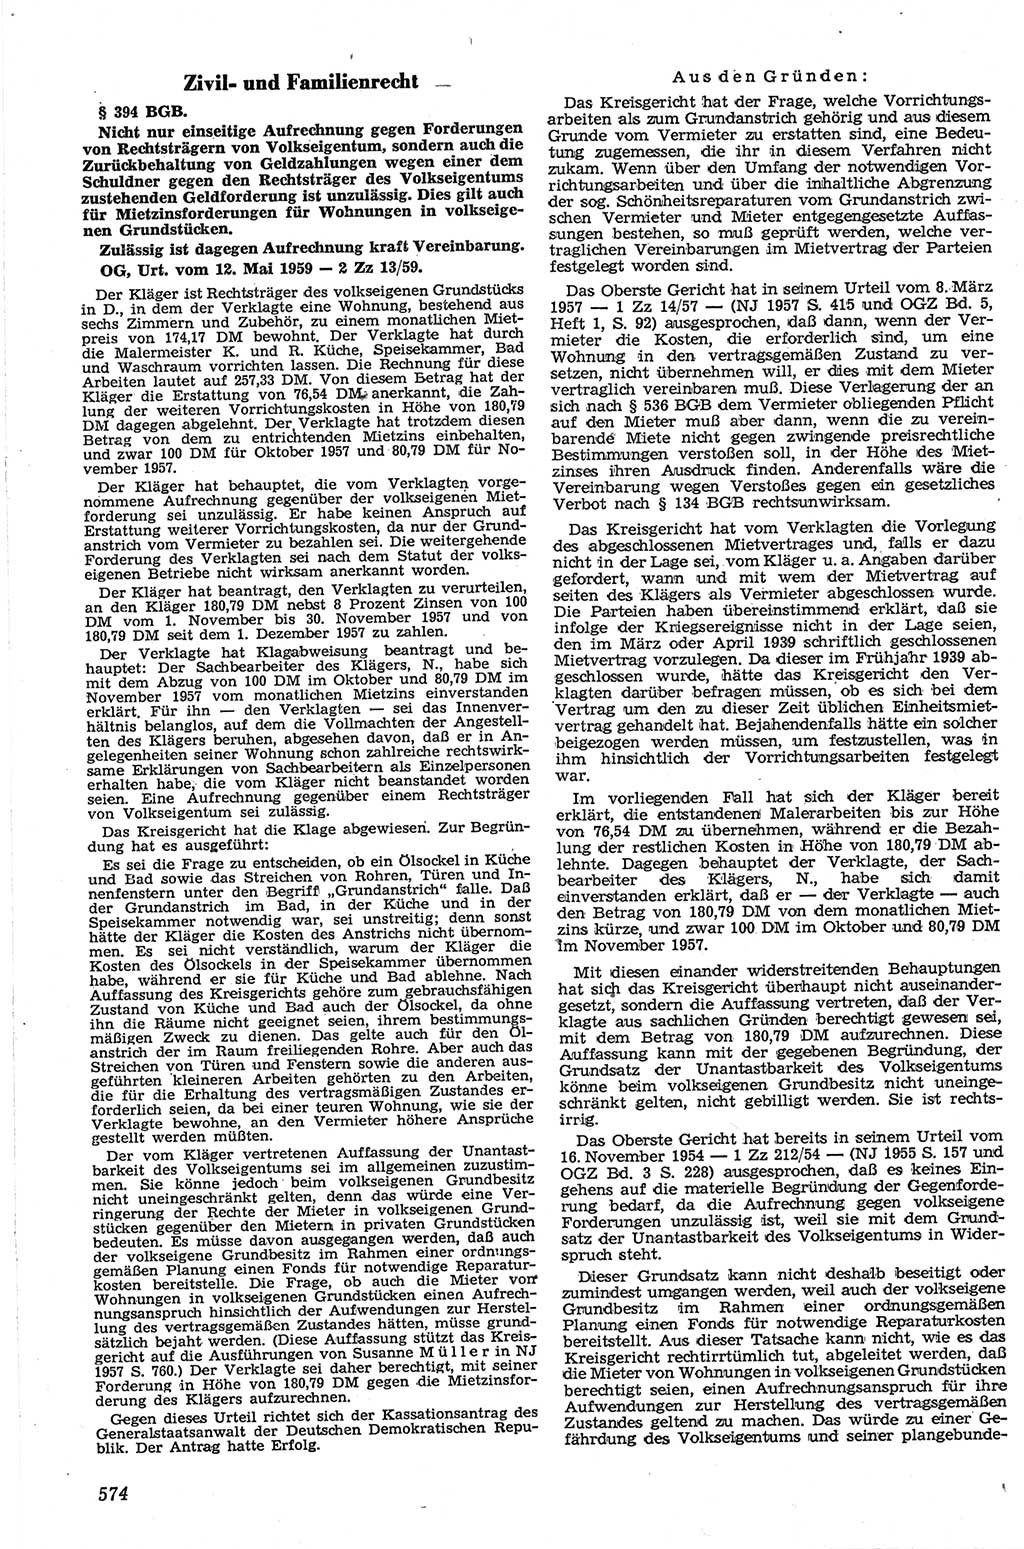 Neue Justiz (NJ), Zeitschrift für Recht und Rechtswissenschaft [Deutsche Demokratische Republik (DDR)], 13. Jahrgang 1959, Seite 574 (NJ DDR 1959, S. 574)